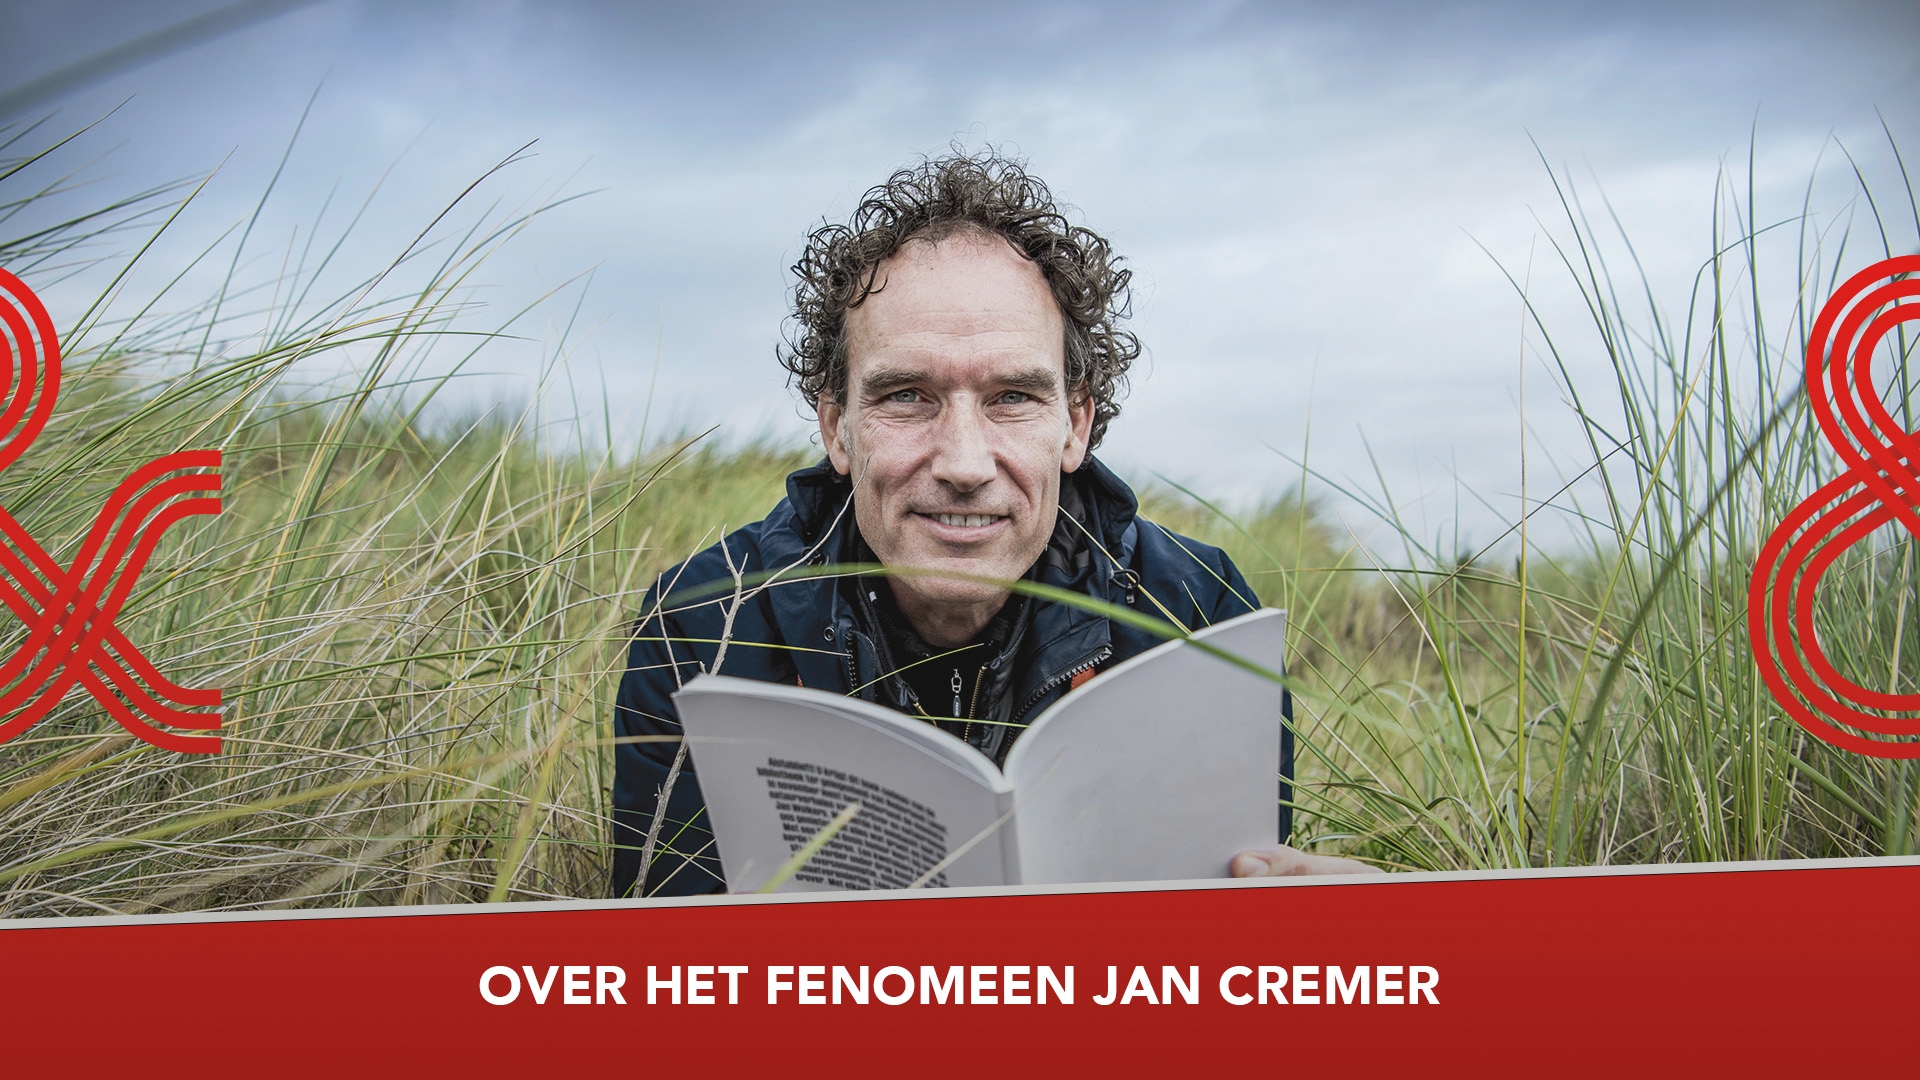 TWITTER - Jan Cremer